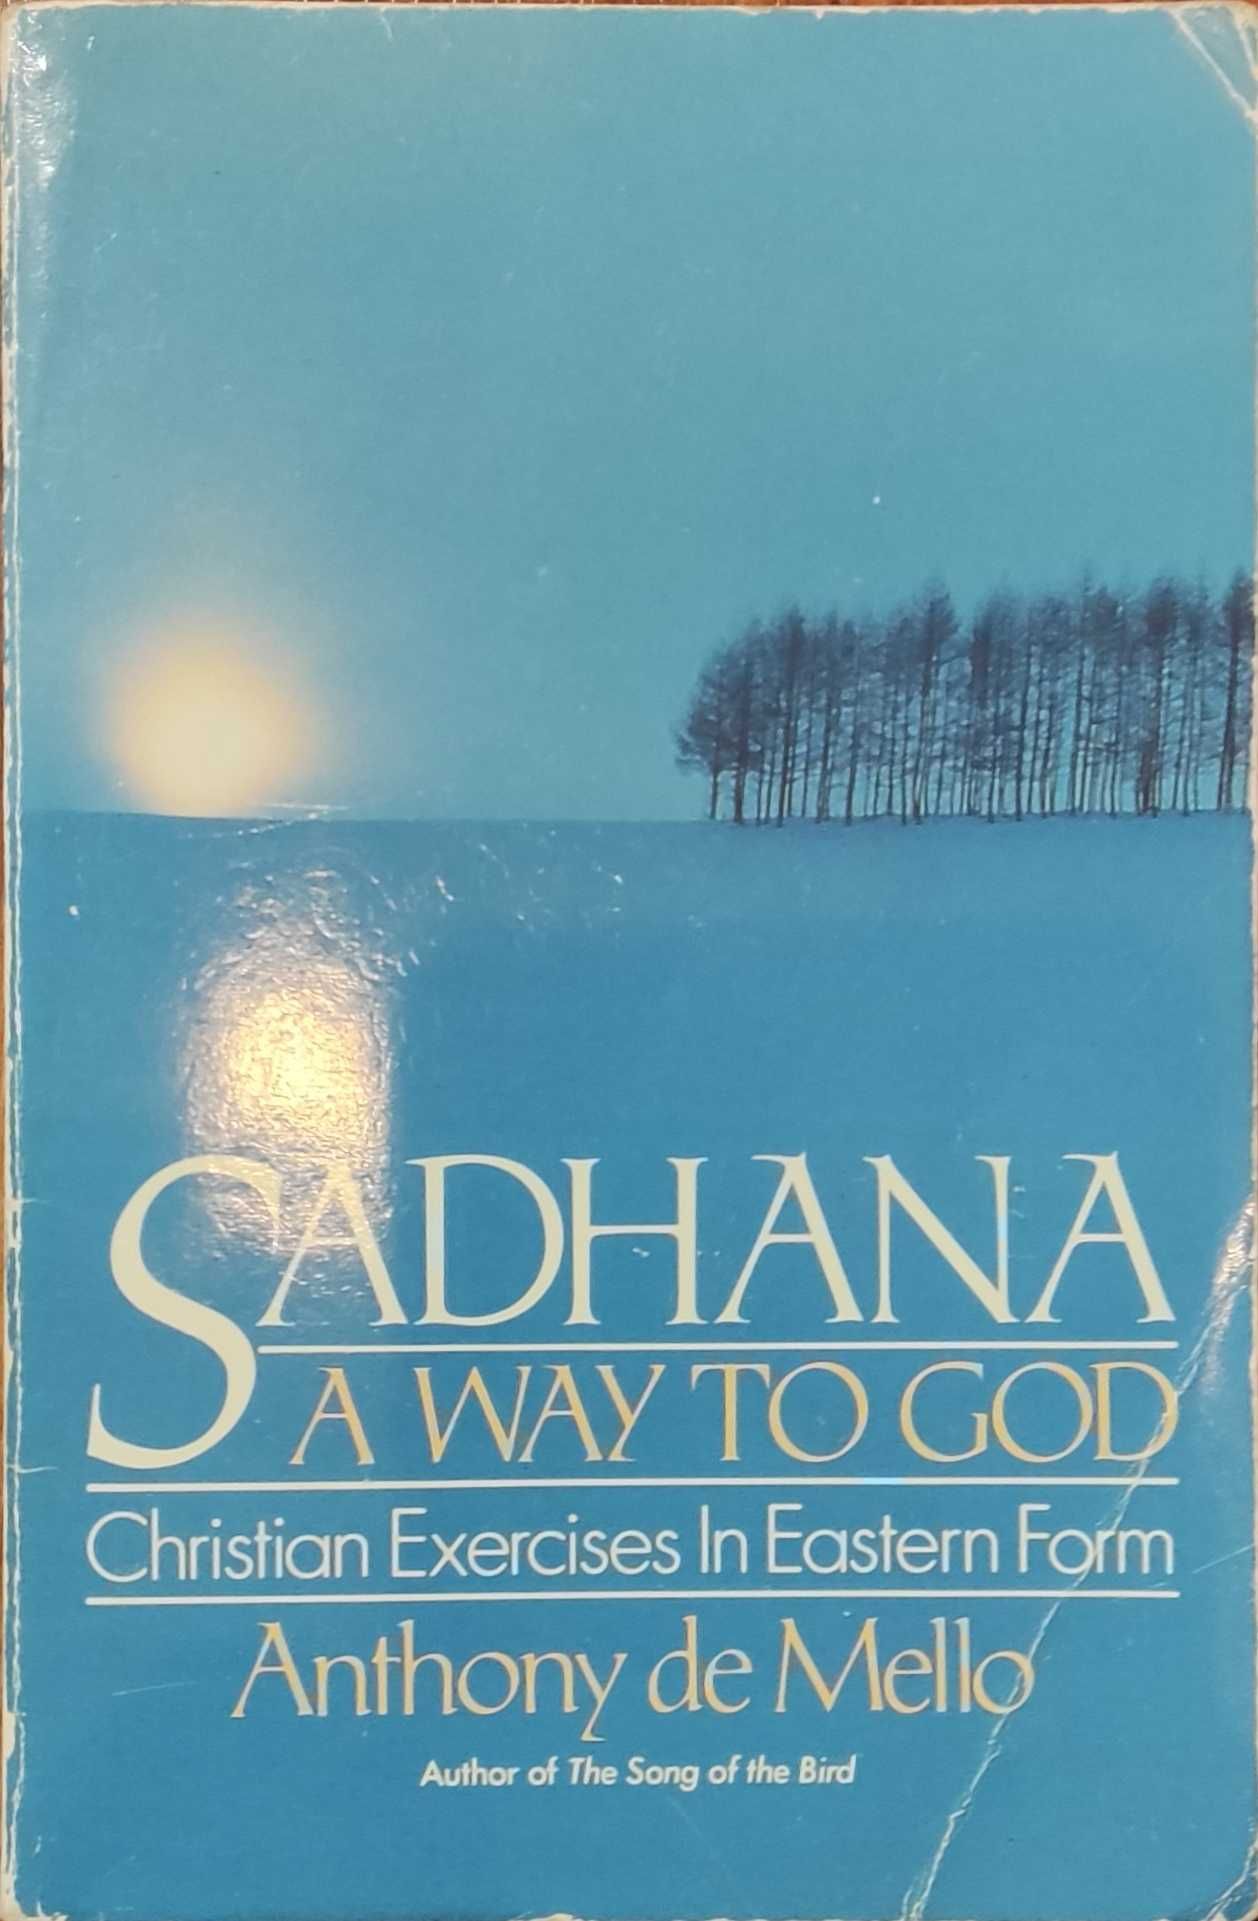 Livro "Sadhana: a way to God" Anthony de Mello (Inglês)